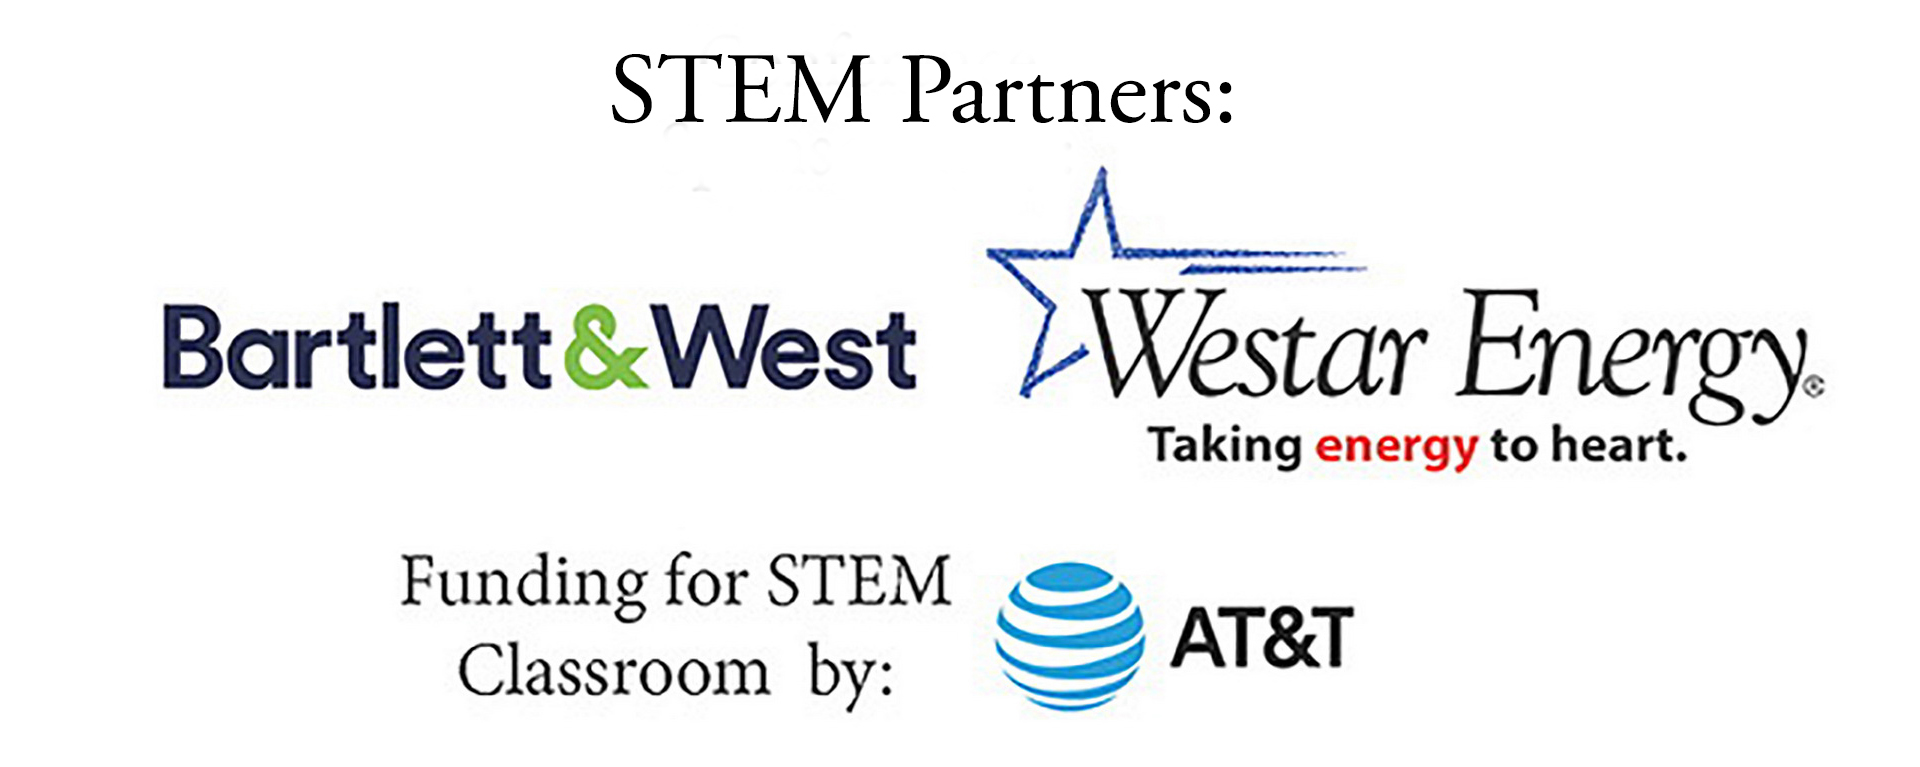 sponsors for STEM conference